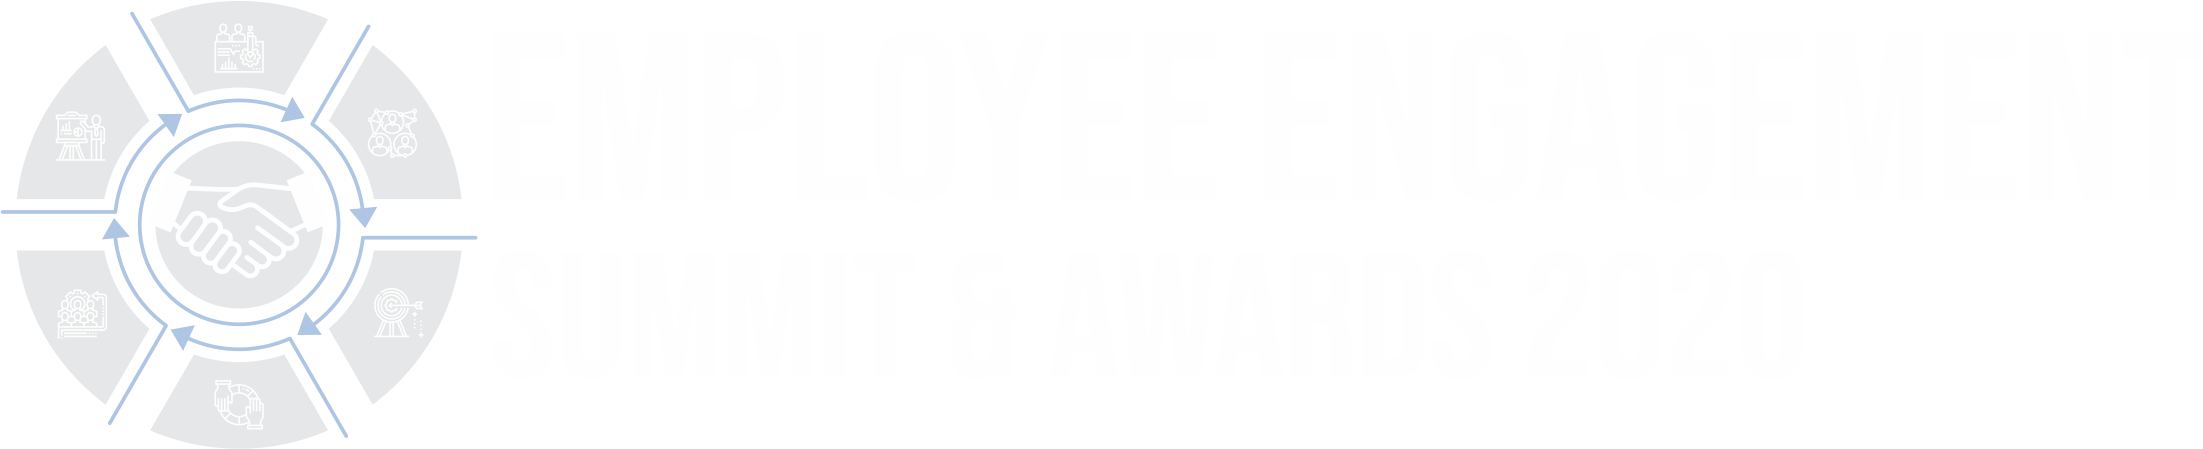 Employee Engagement Summit 2020